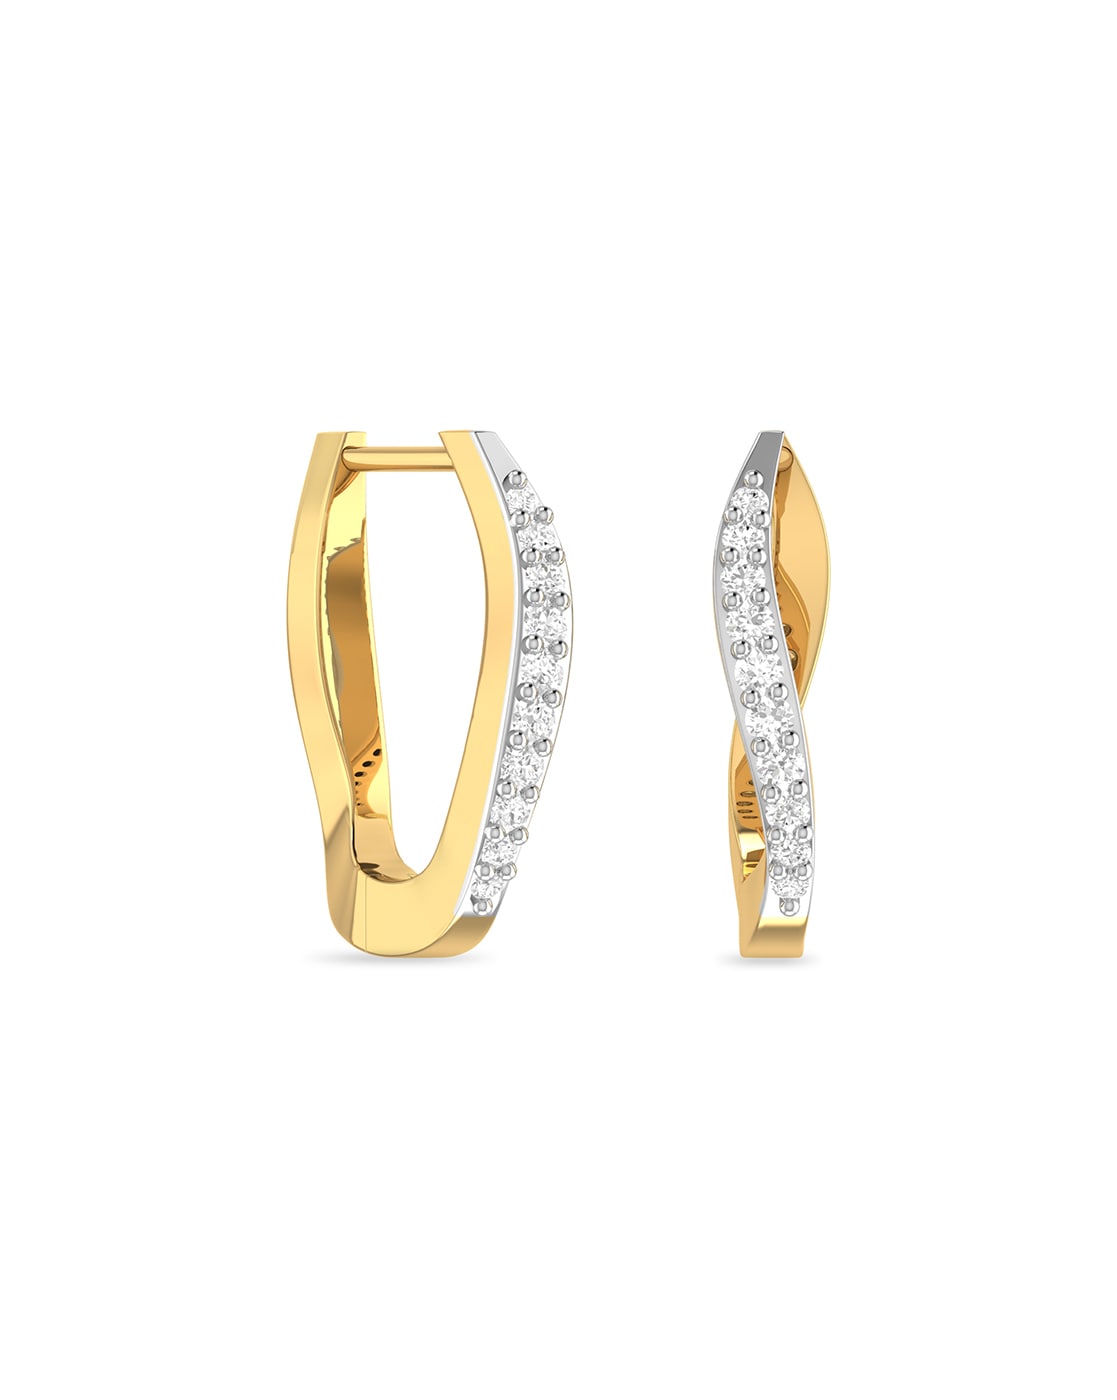 Share more than 50 caratlane diamond hoop earrings